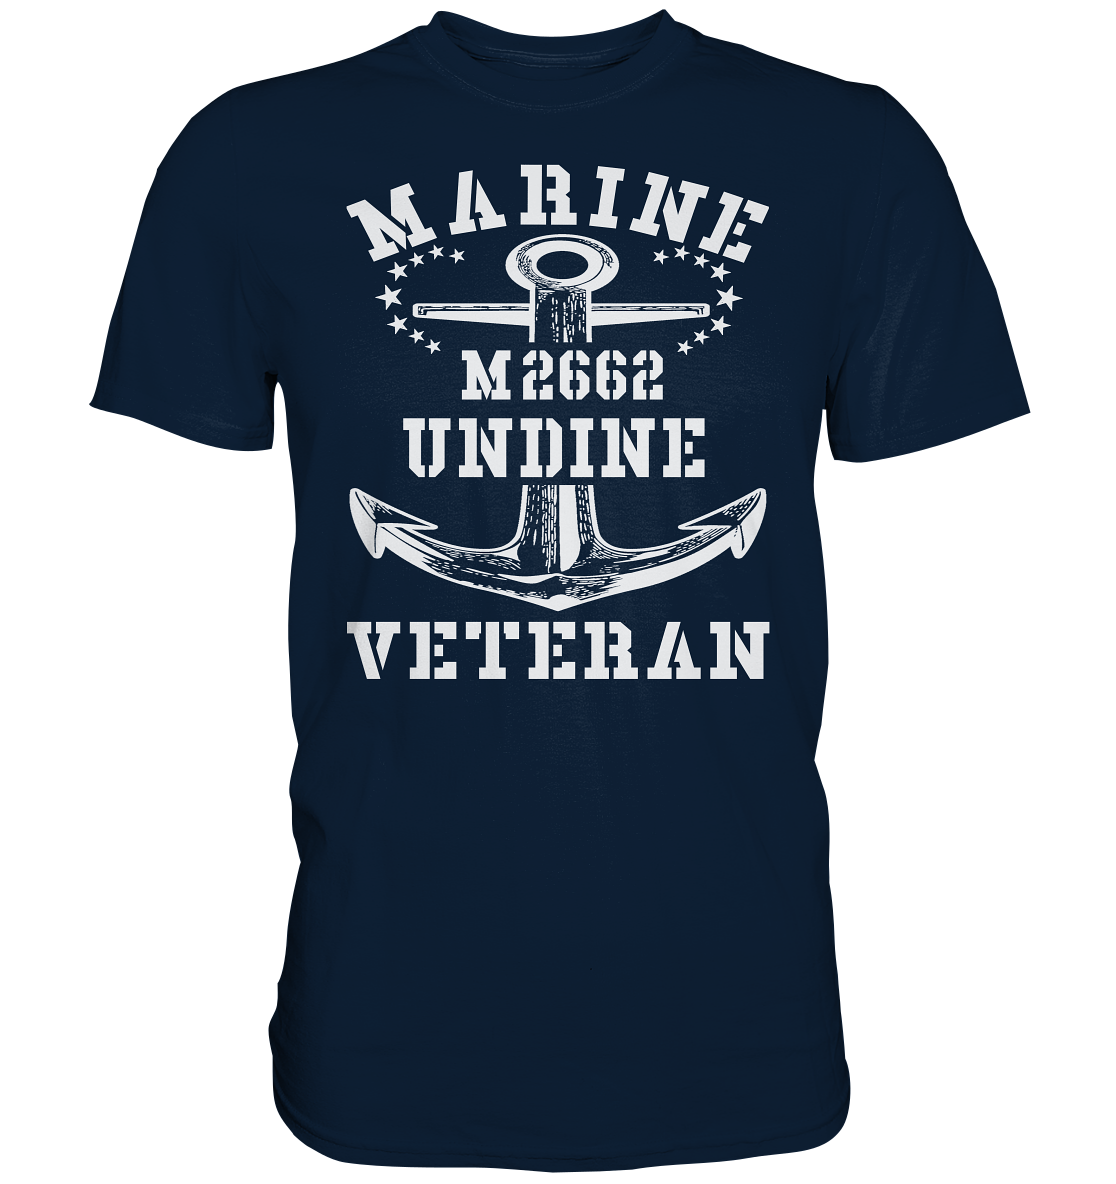 BiMi M2662 UNDINE Marine Veteran - Premium Shirt